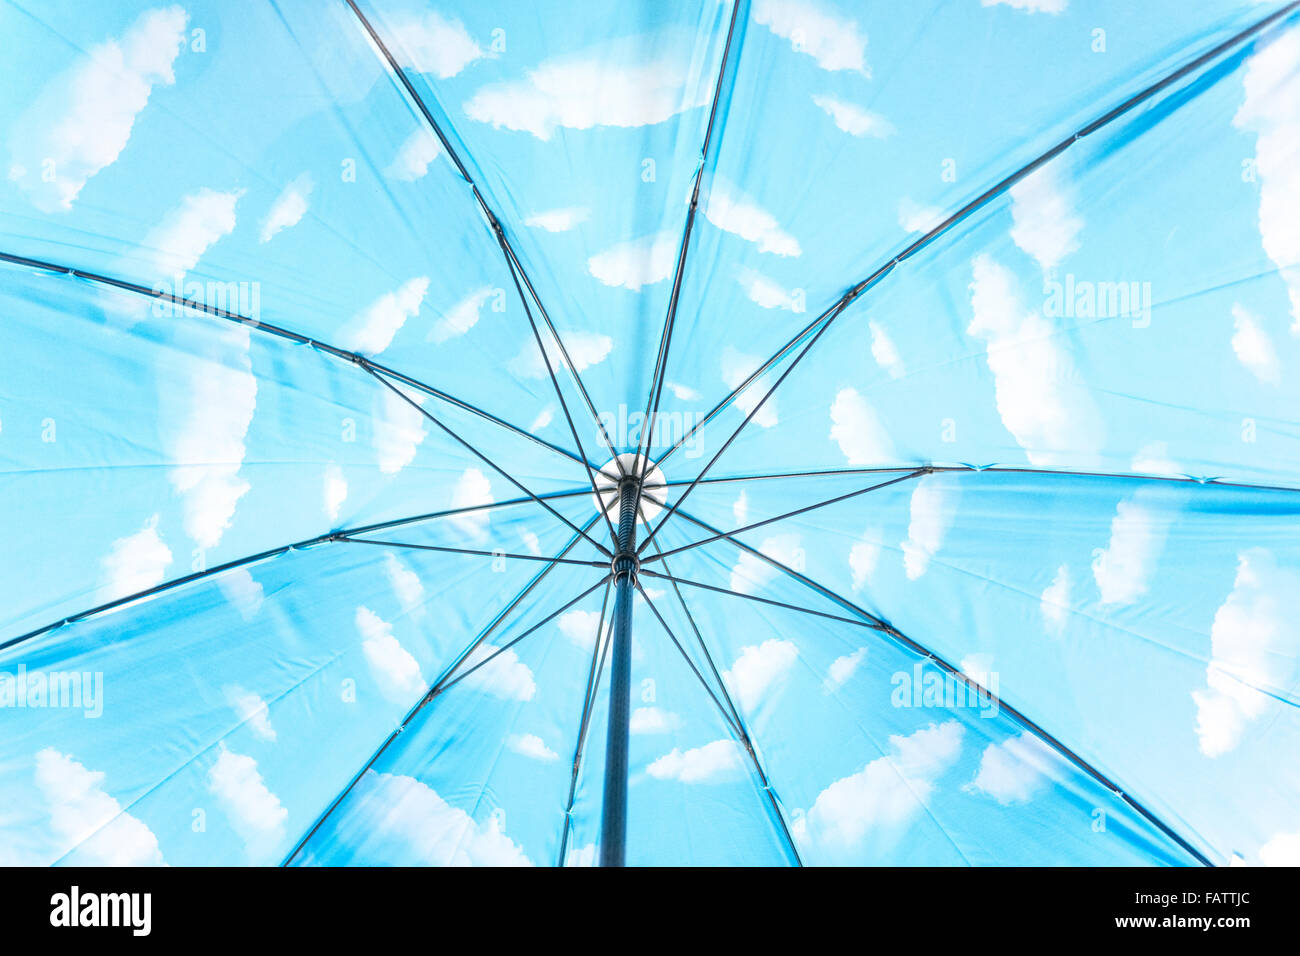 En el interior de un paraguas con nubes blancas en el cielo azul. Una referencia a Magritte o el optimismo y el pensamiento positivo. Foto de stock